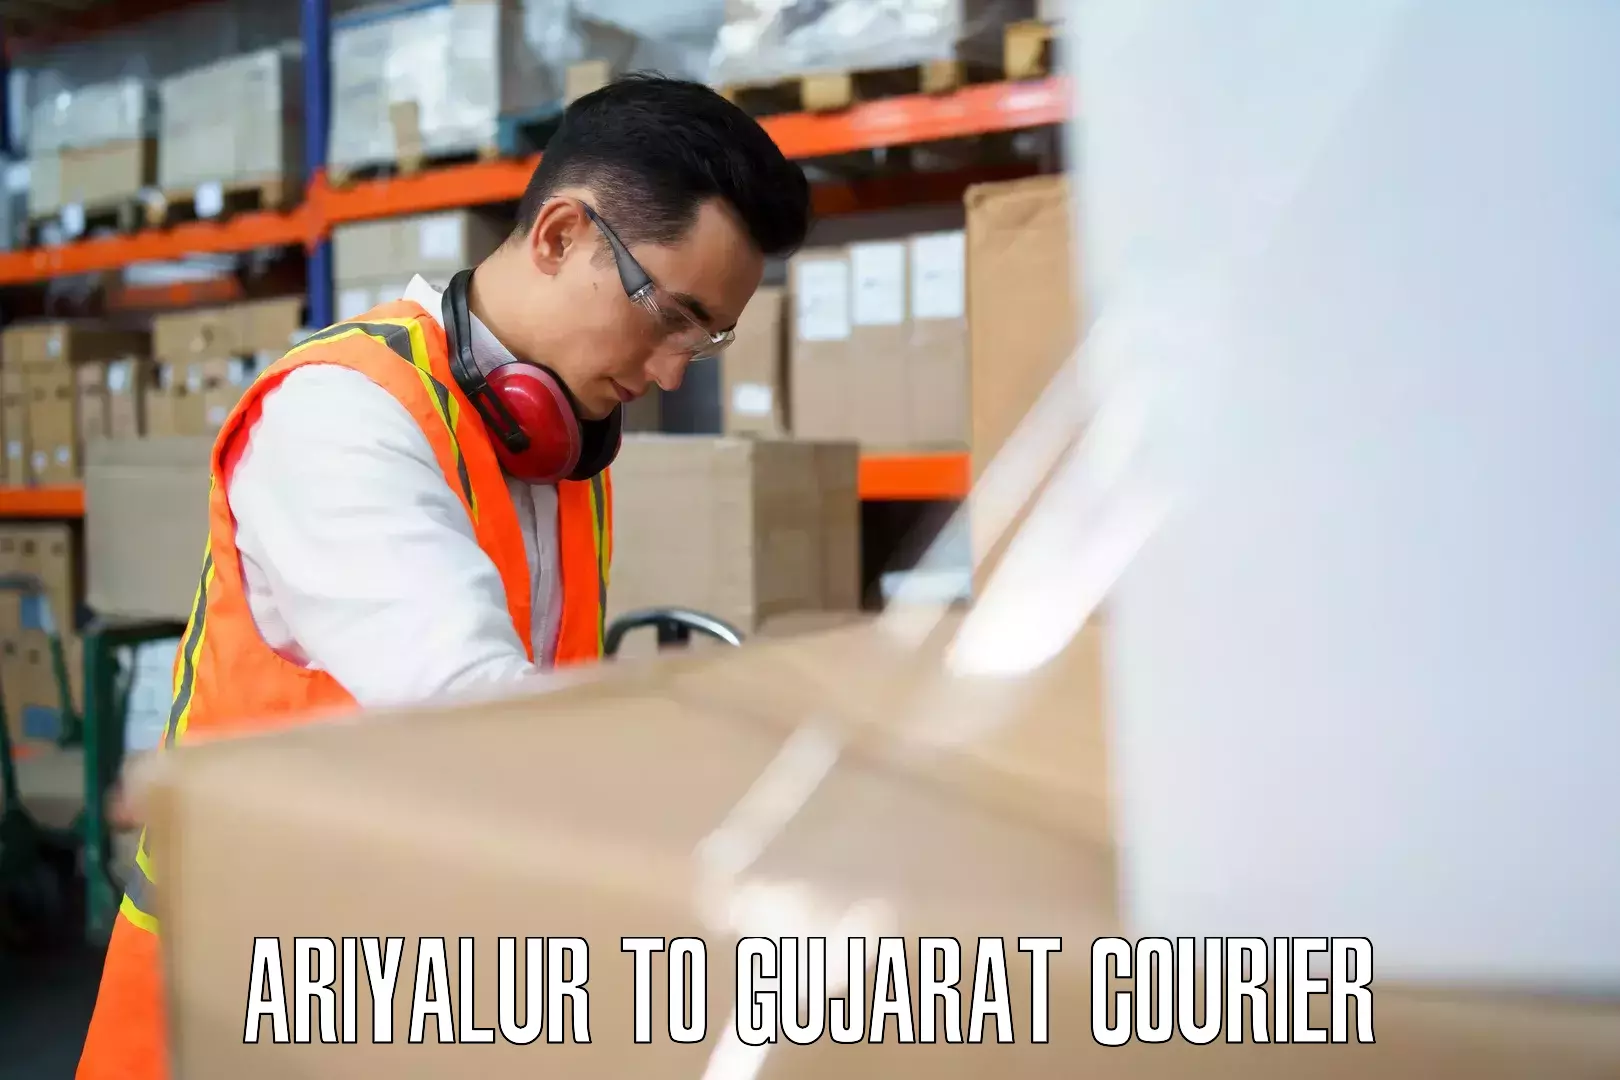 Luggage transport guidelines Ariyalur to Gandhinagar